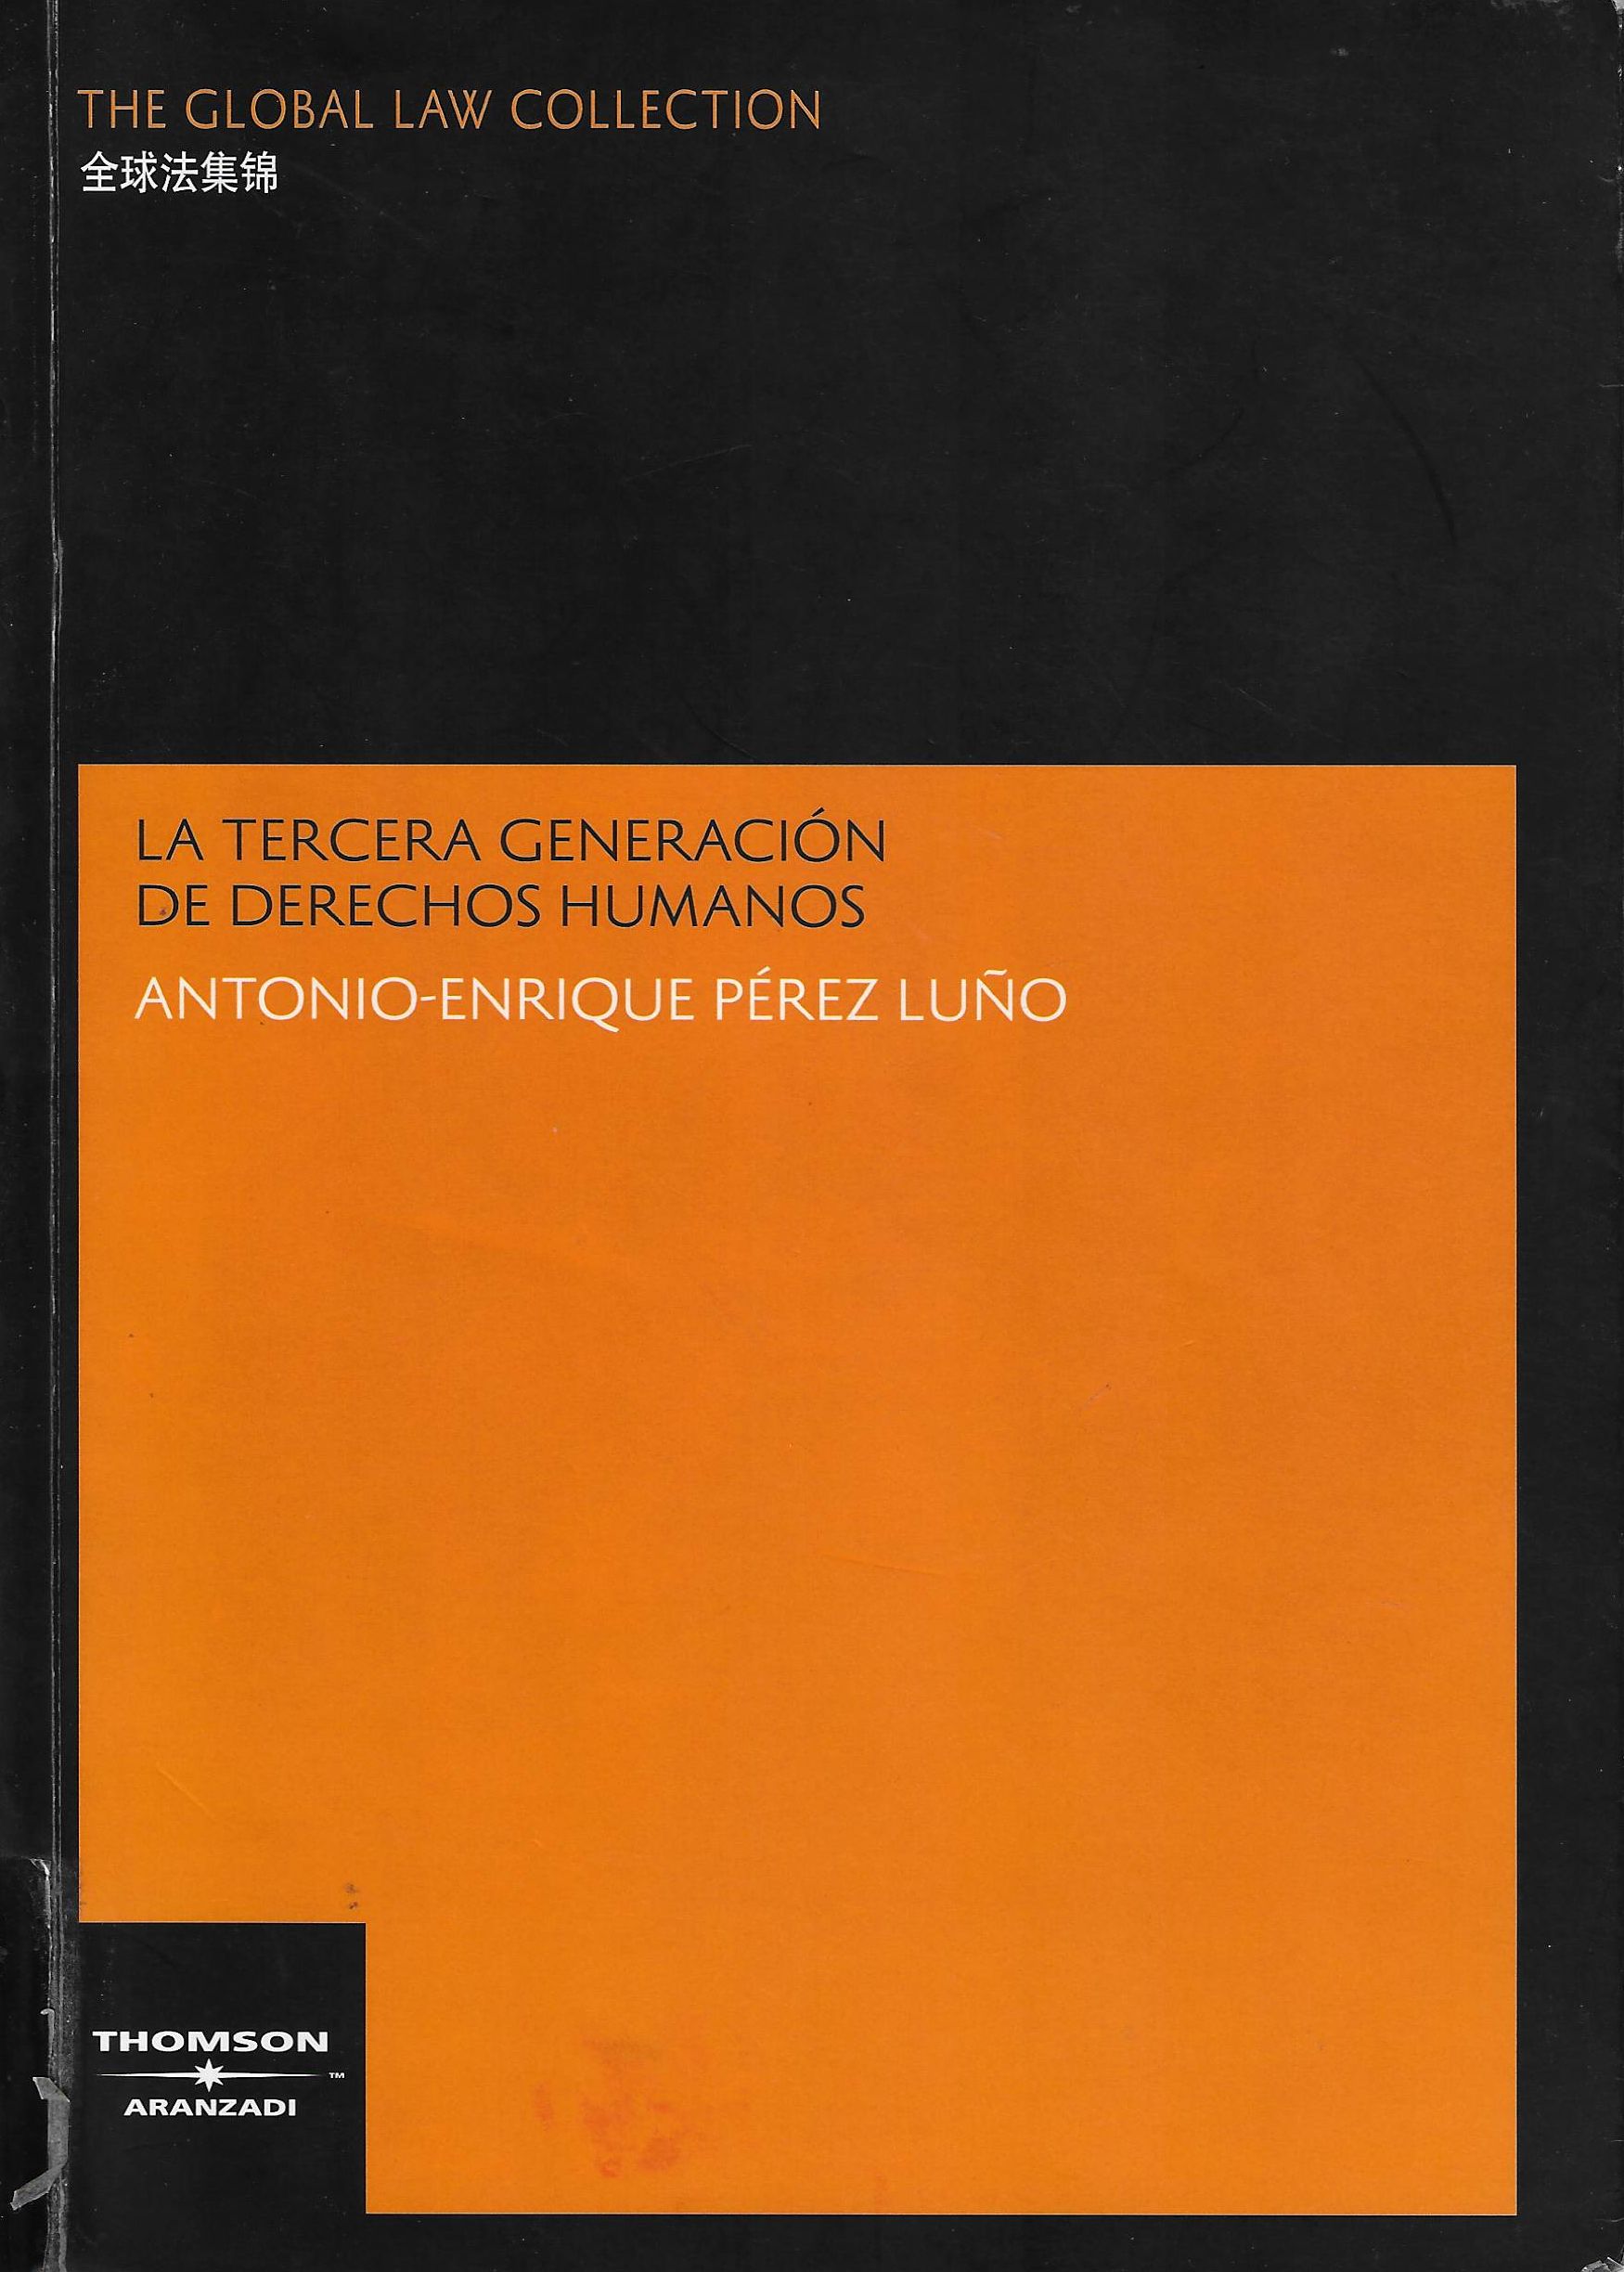 Imagen de portada del libro La tercera generación de derechos humanos